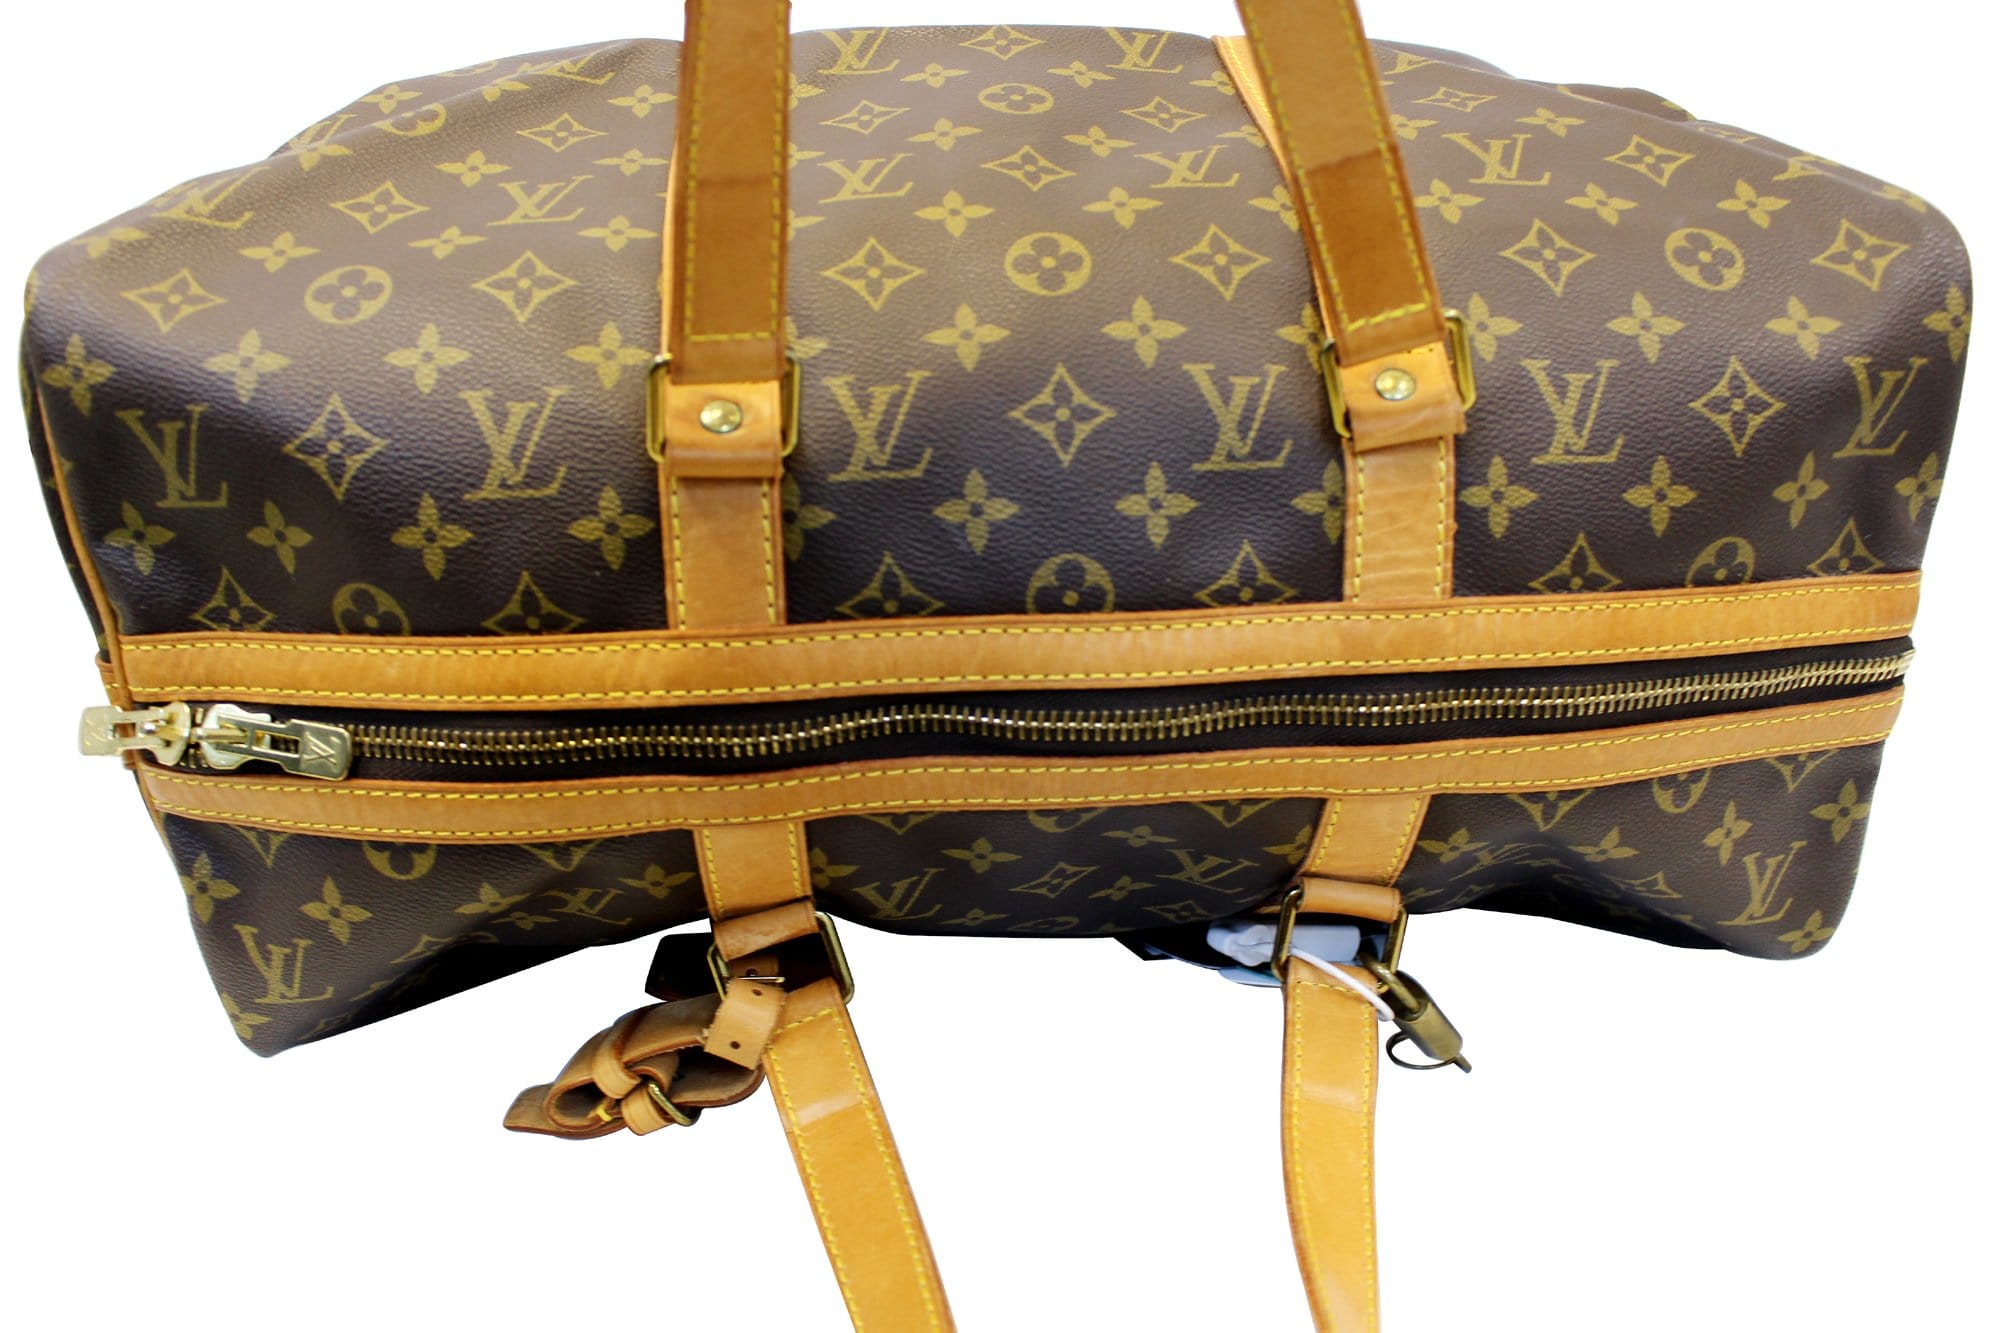 Louis Vuitton Monogram Canvas Sac Souple 55 Travel Bag Louis